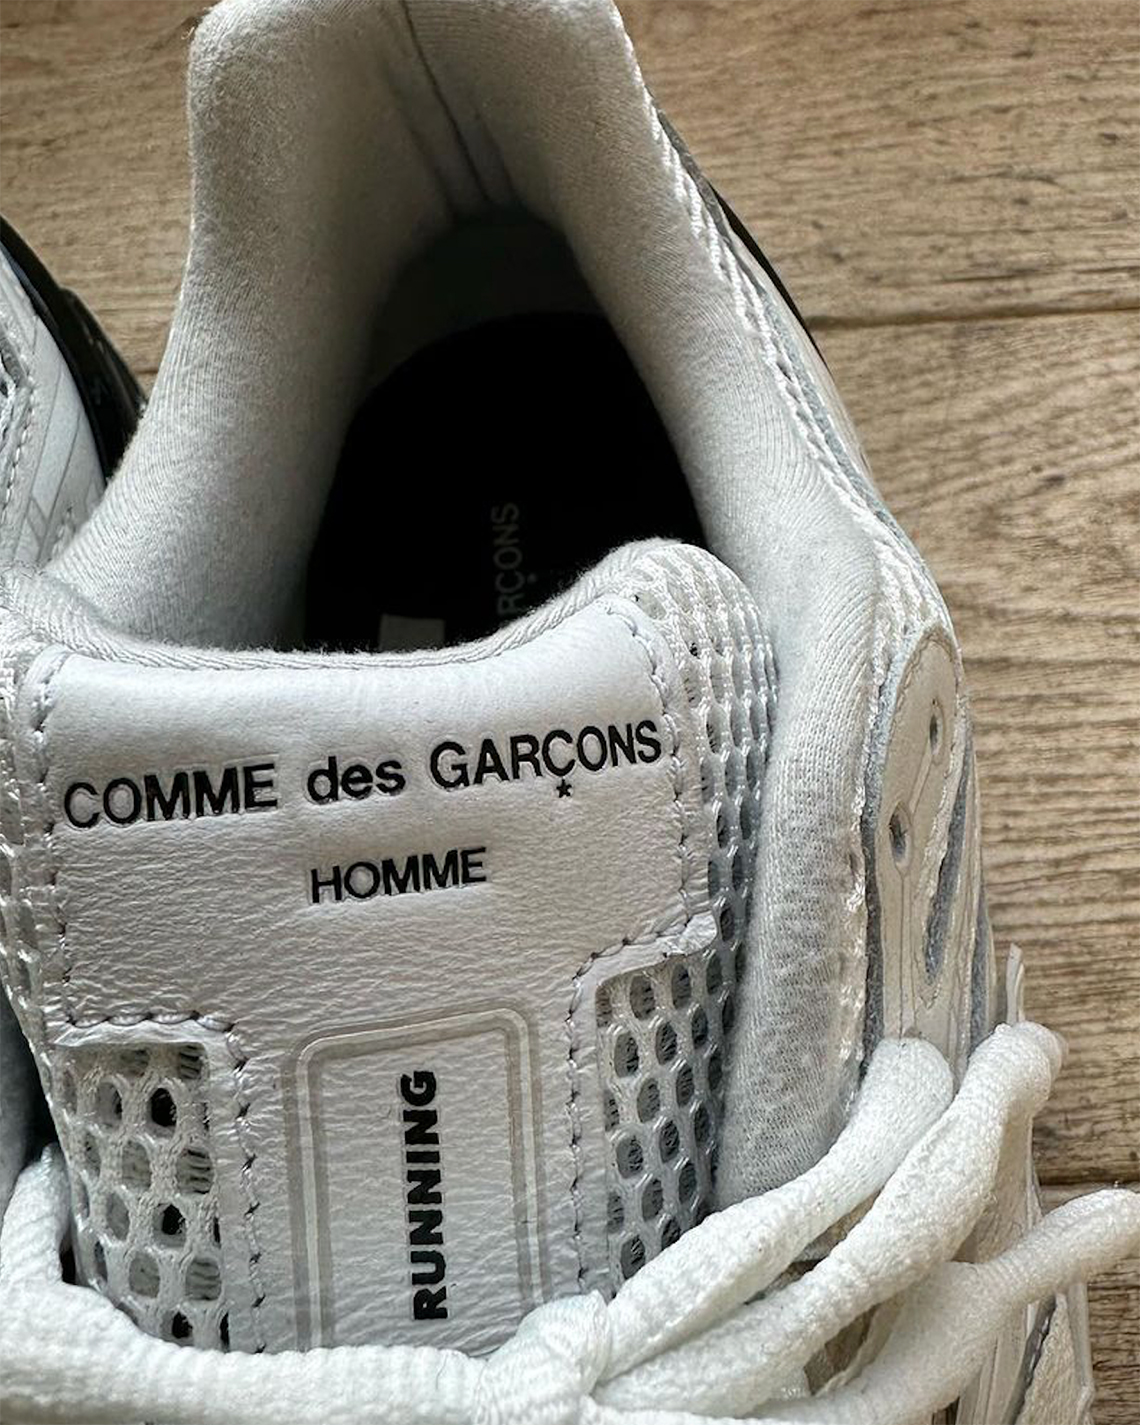 COMME des GARÇONS HOMME x New Balance 1906R | SneakerNews.com